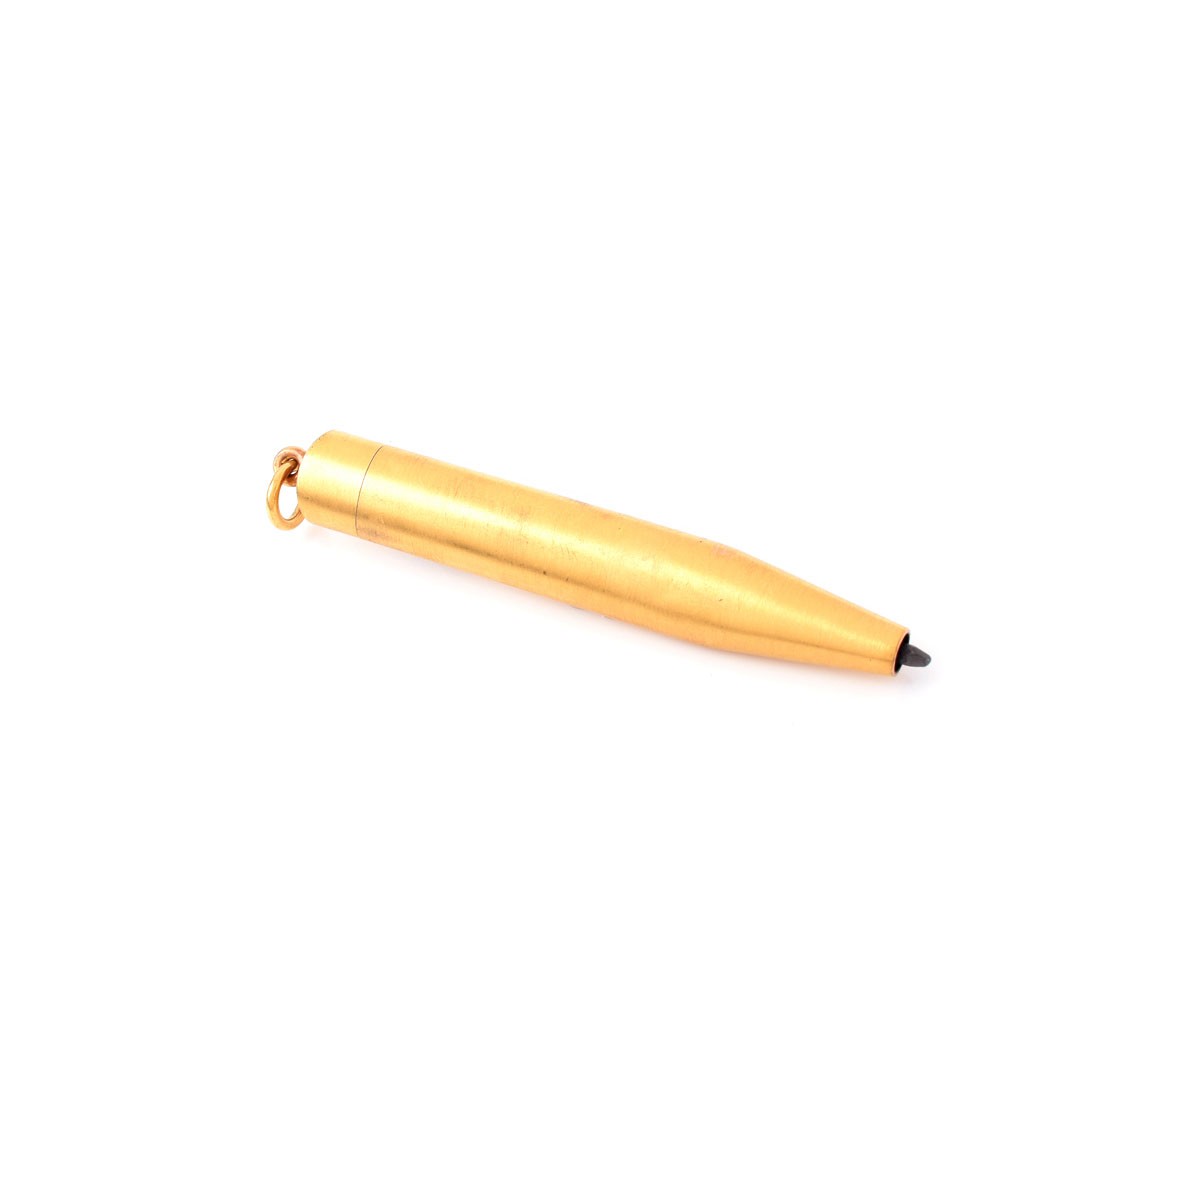 Antique 18K Gold Pendant Mechanical Pencil